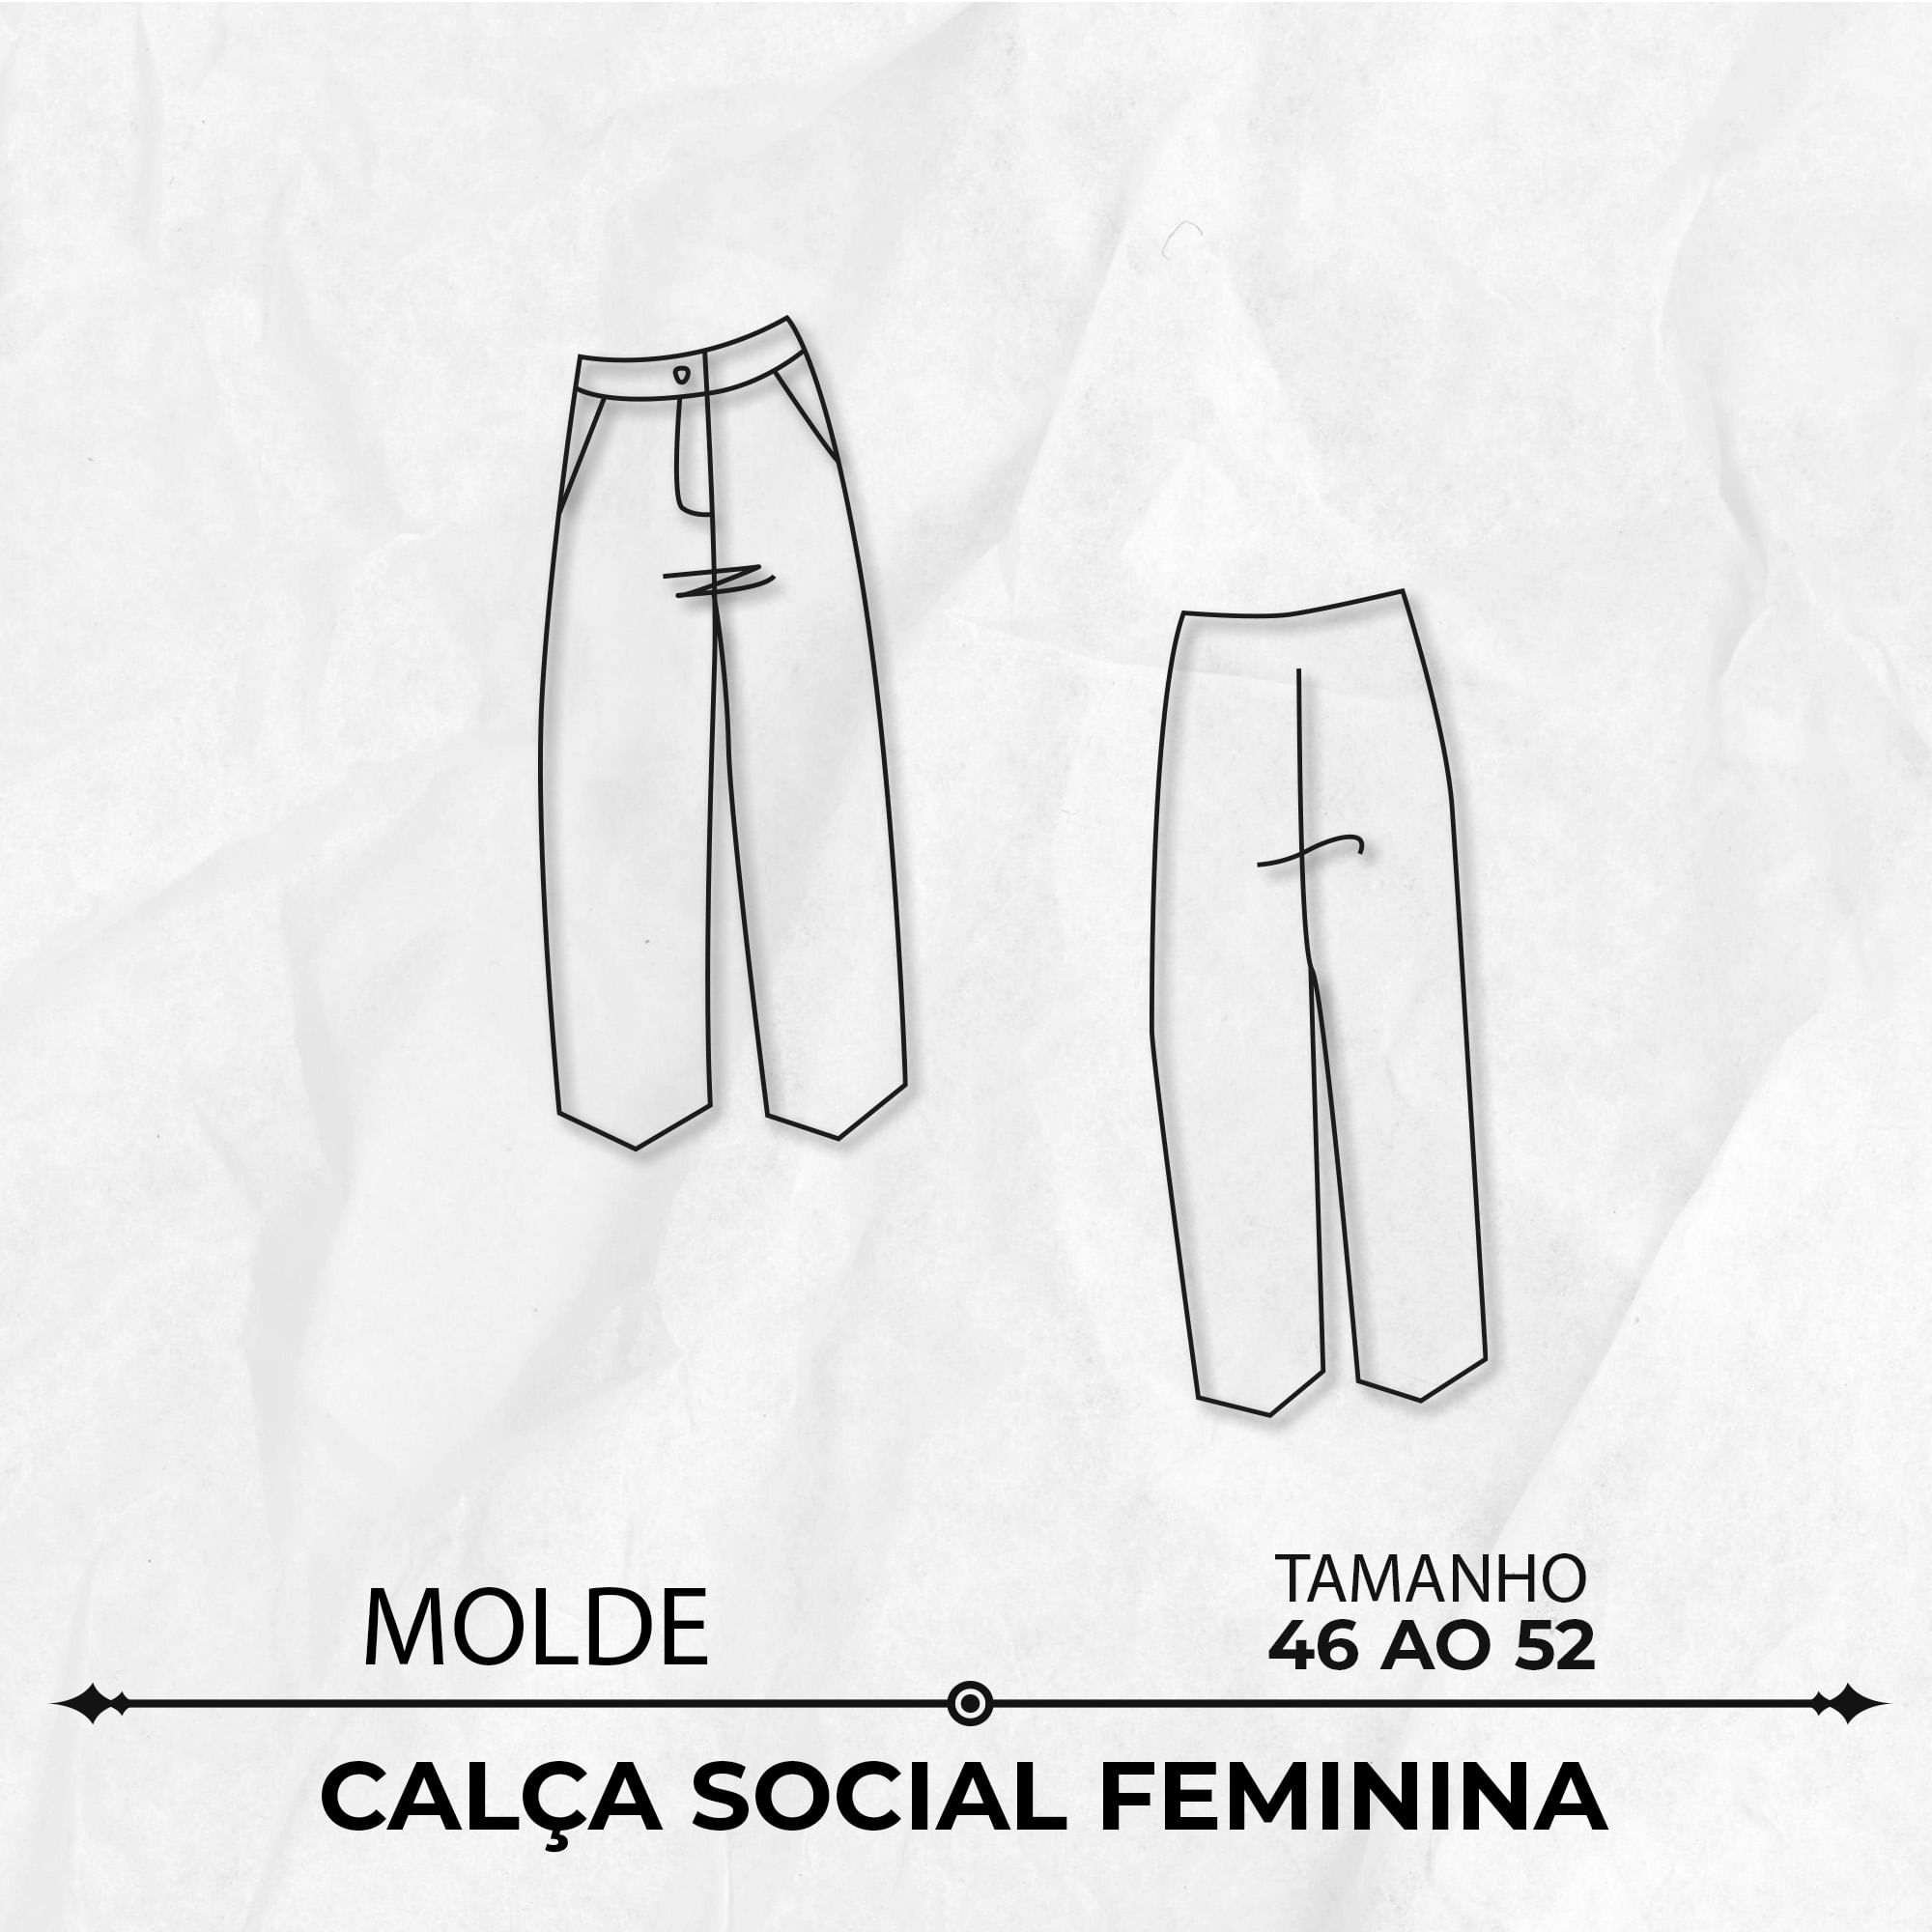 Molde de calça social feminina tamanho 46 ao 52 by Marlene Mukai